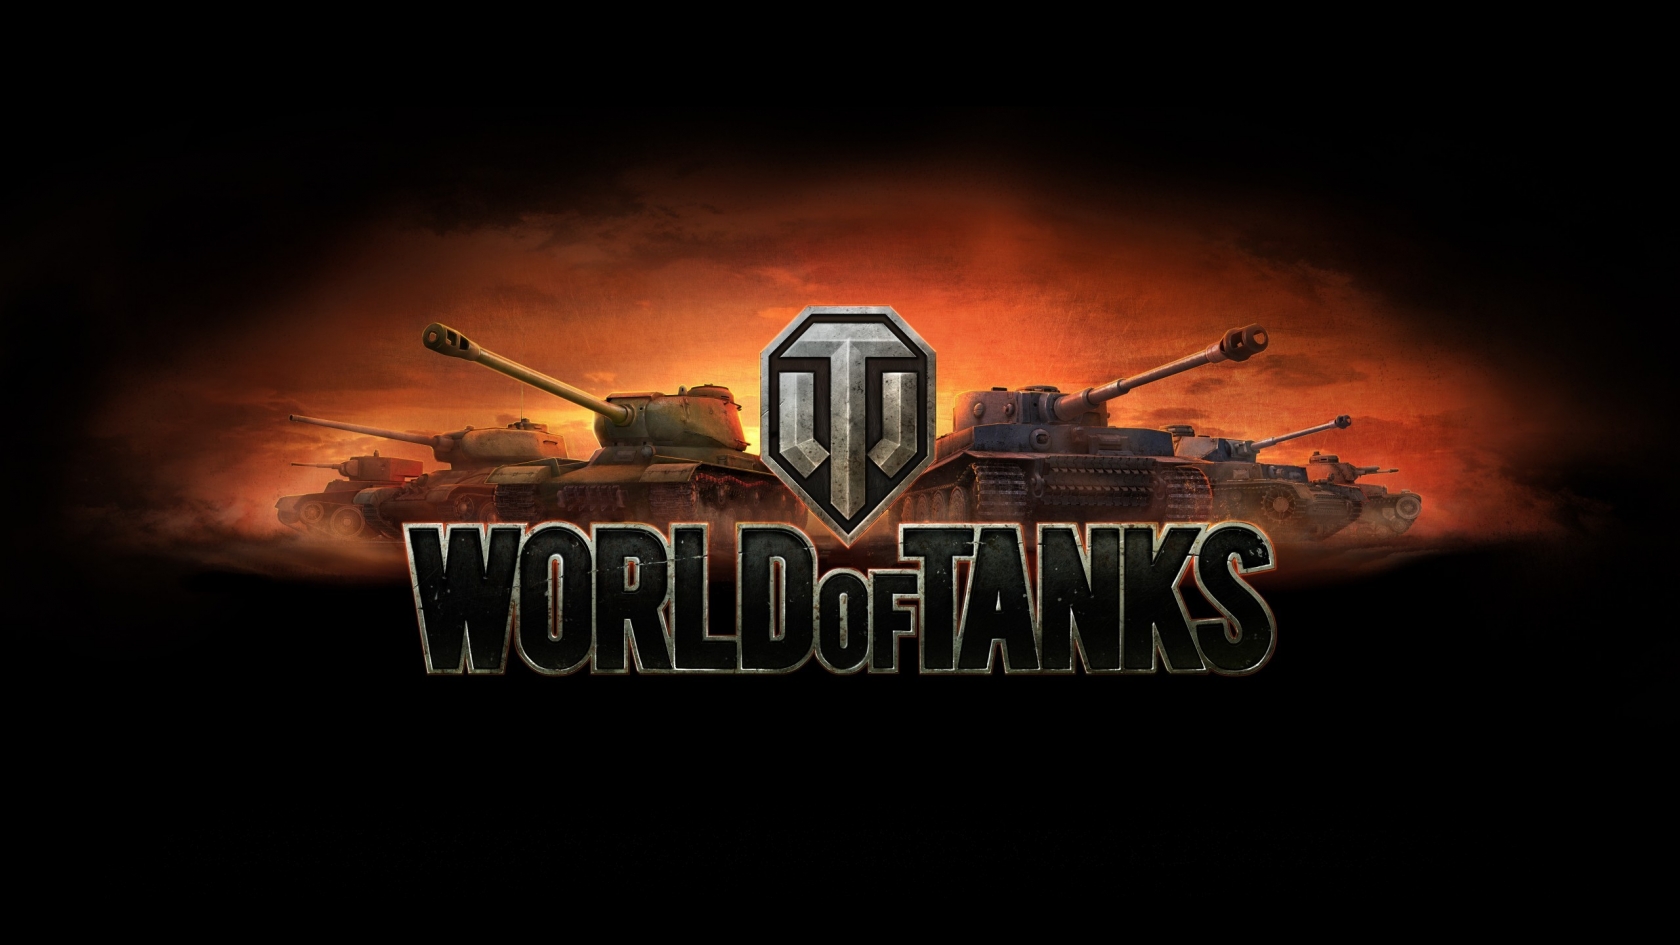 World of Tanks Poster for 1680 x 945 HDTV resolution